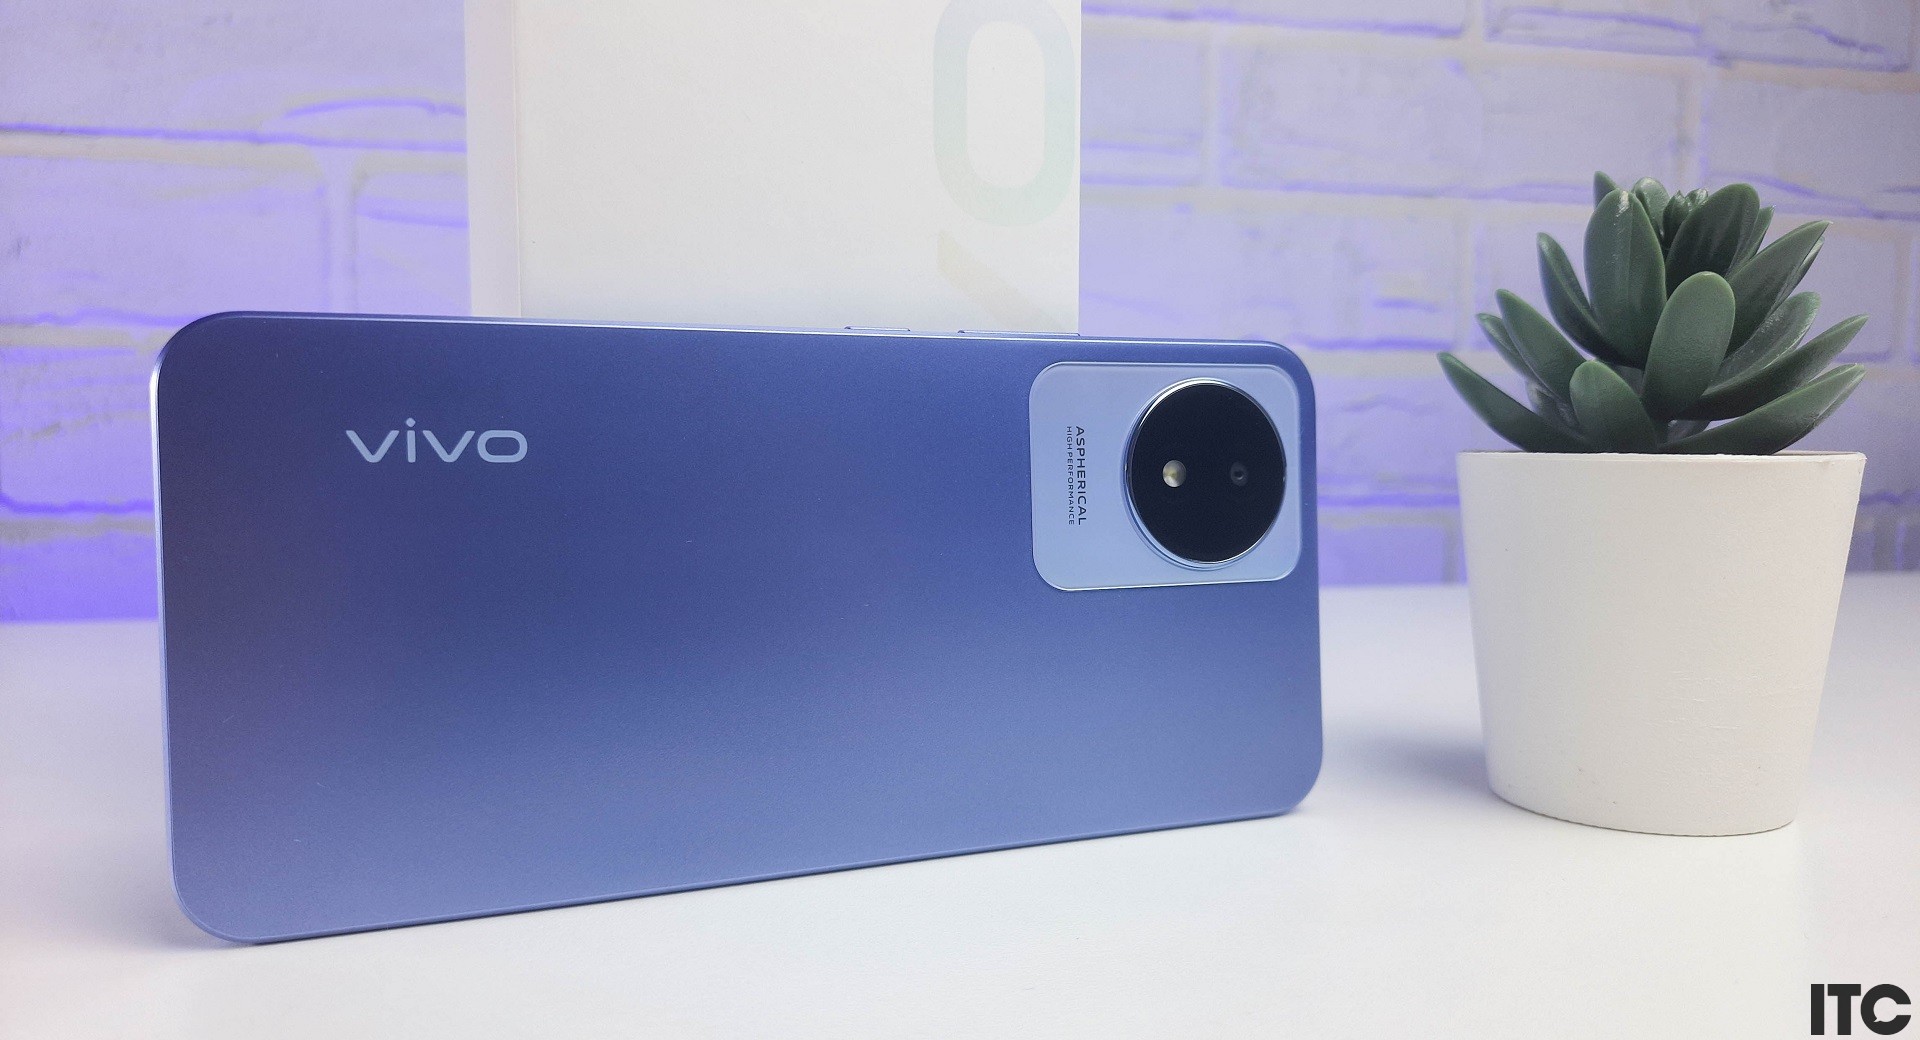 Обзор смартфона Vivo Y02: современный дизайн, батарея 5000 мАч и порт MicroUSB за $95